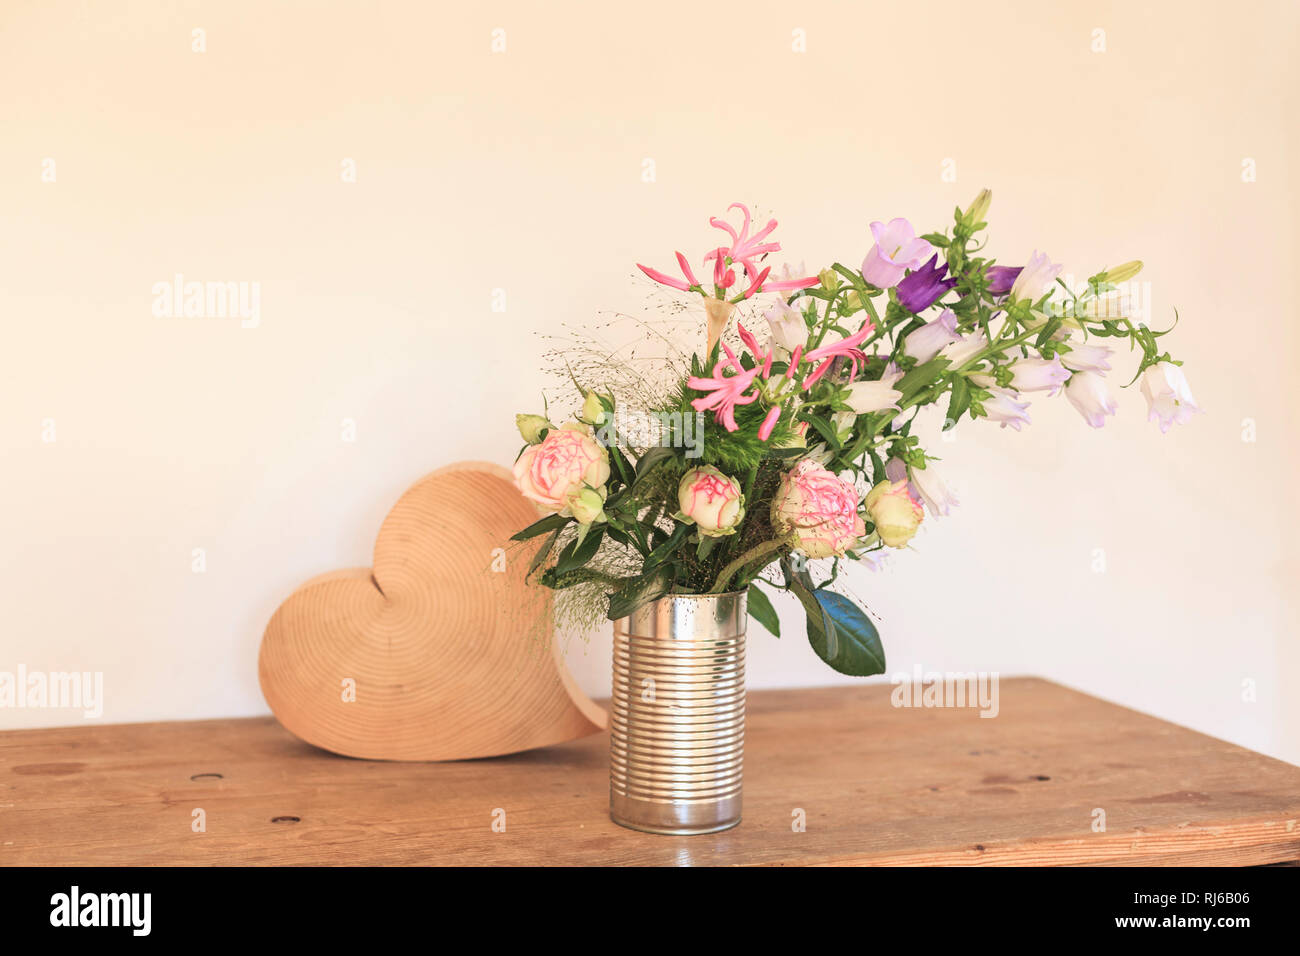 Strauß Sommerblumen, Dose als Vase, daneben ein Herz aus Holz Stock Photo